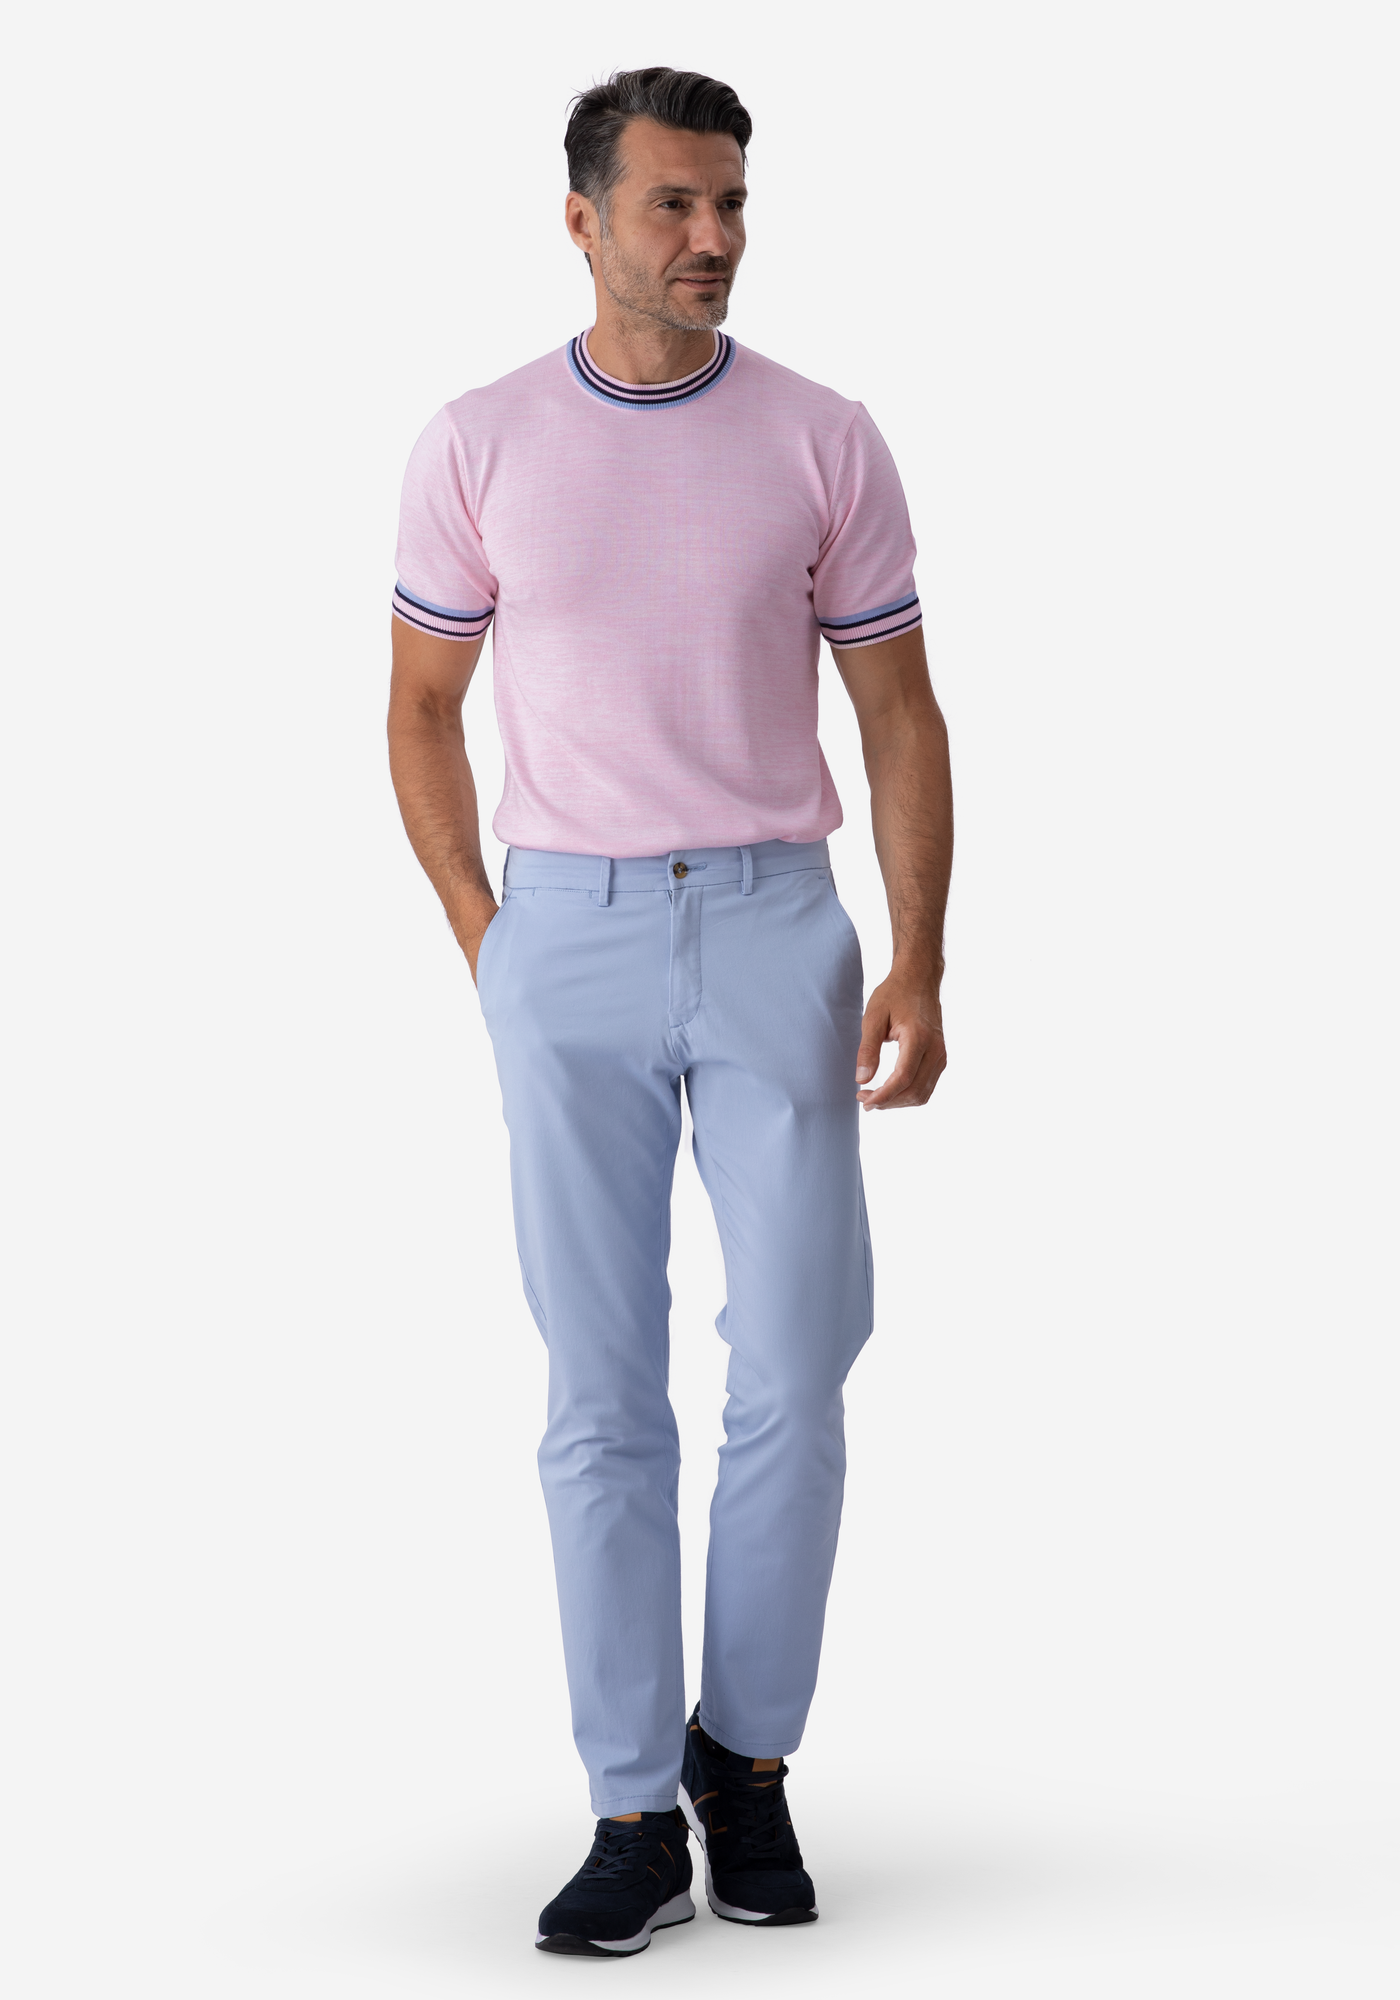 Pale Pink Melange Knitted Crewneck Shirt